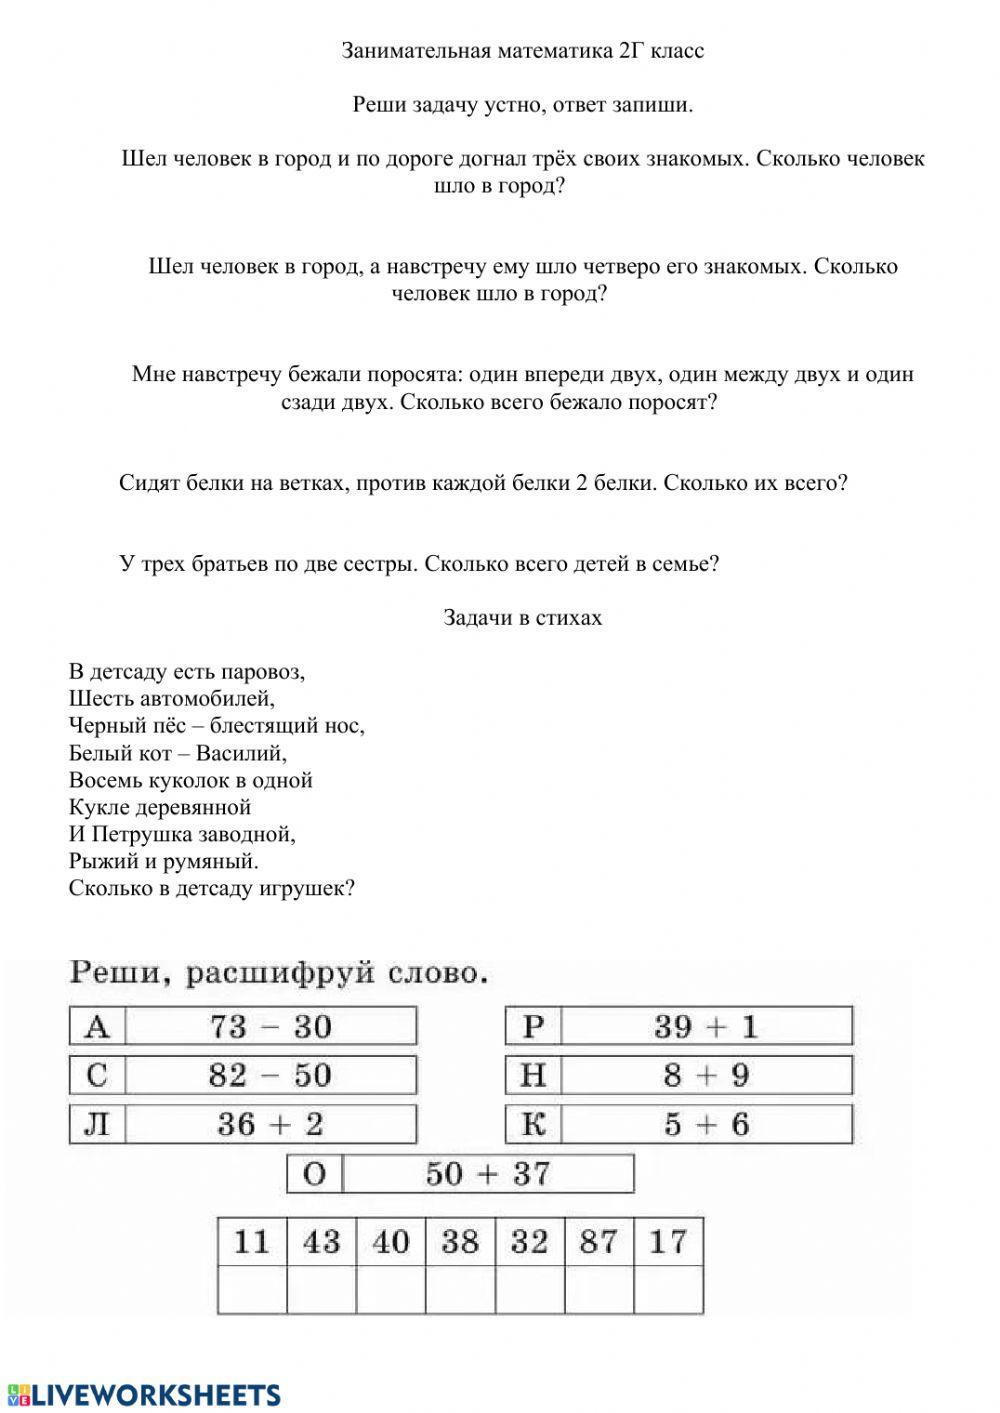 Занимательный русский язык, 2Г задание 2